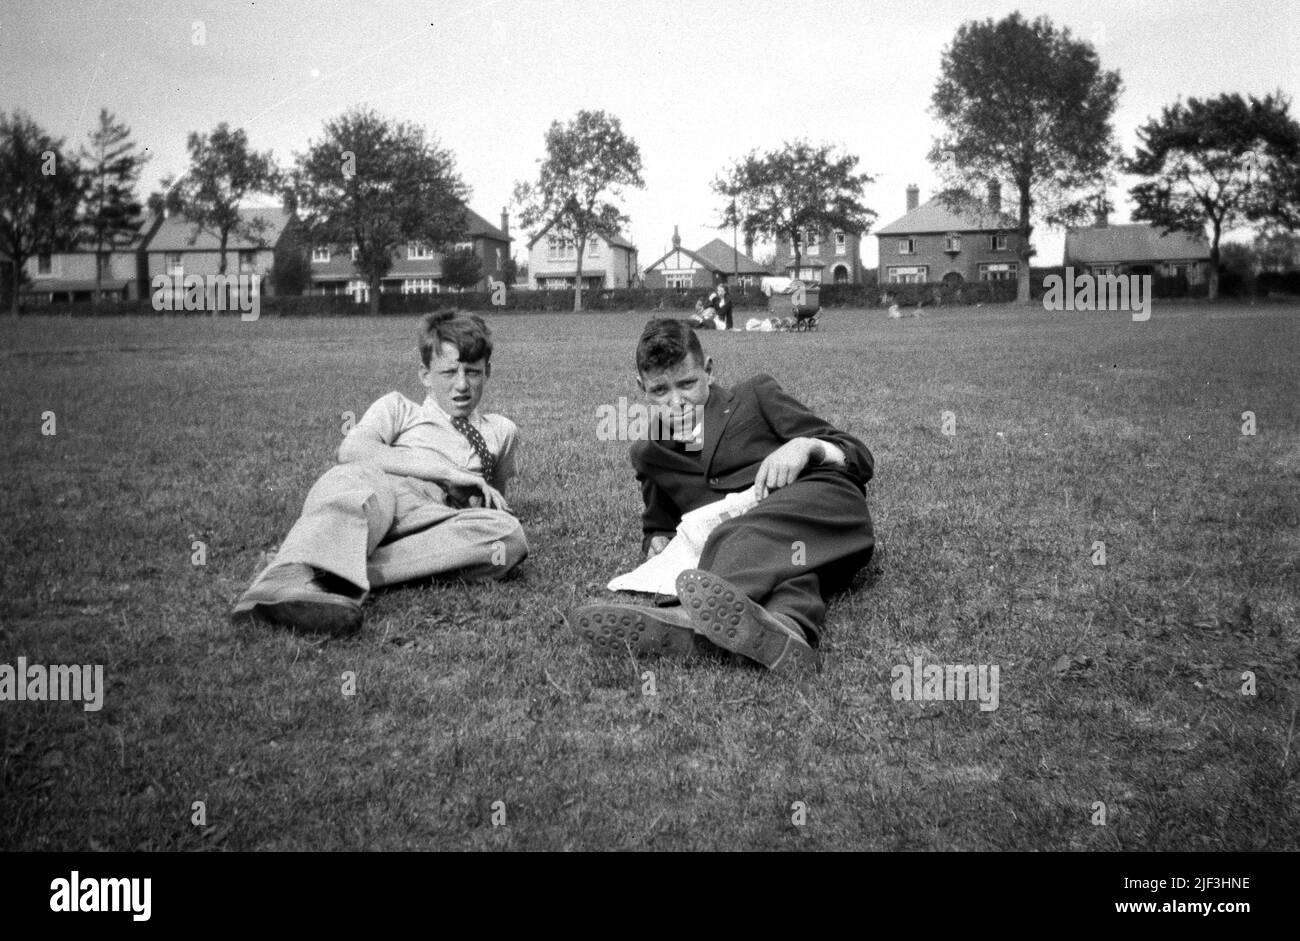 Ende 1930s, historisch, zwei Teenager, die sich auf dem Rasen in einem Park, Newbury, England, Großbritannien, entspannen. Stockfoto